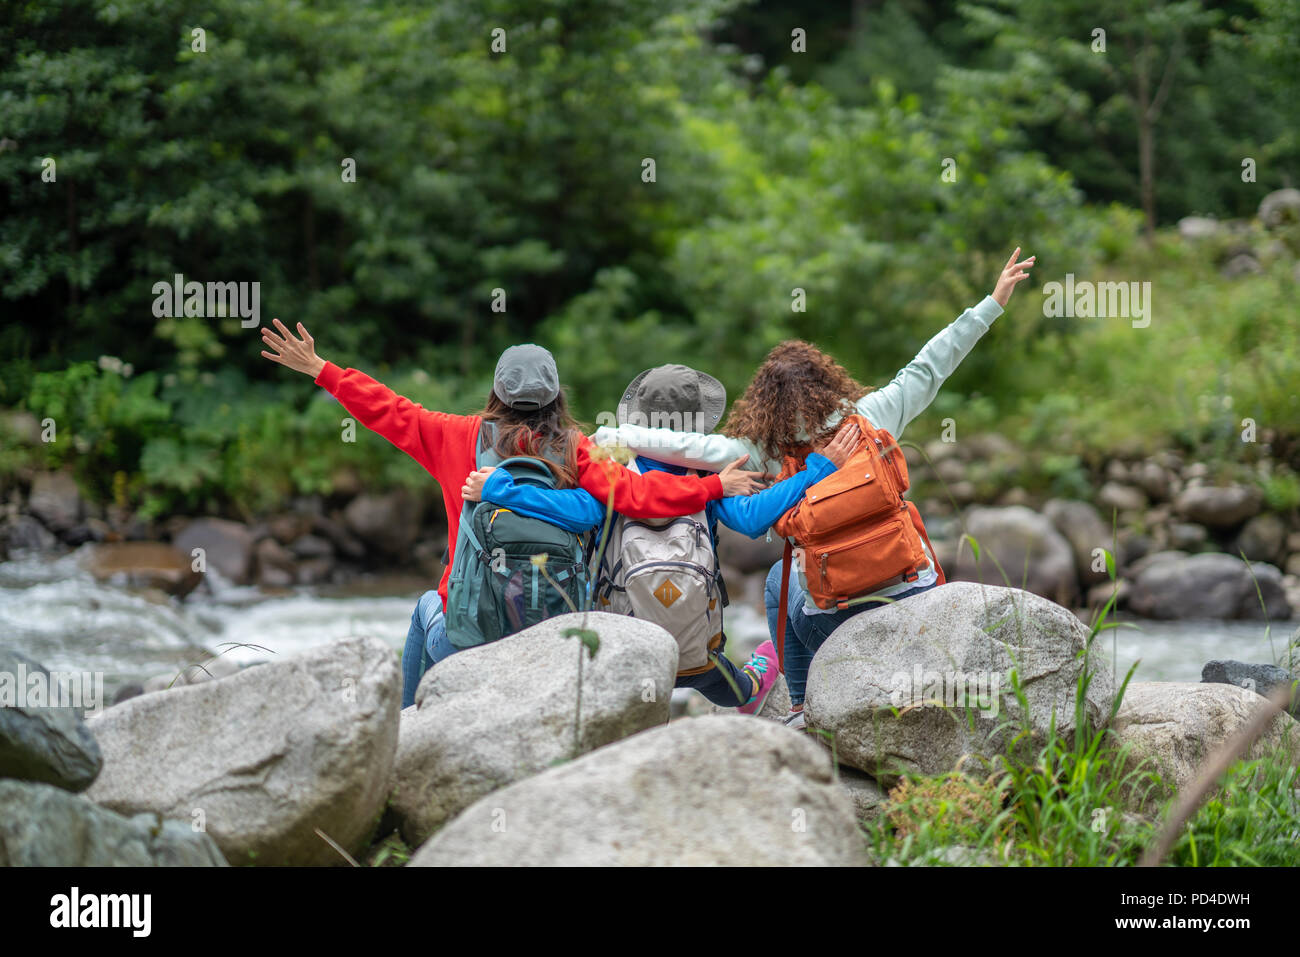 Gruppe von Frauen Freunde Backpacker Reise Reisen und Camping im Wald in Wochenende Sommer - Lifestyle und Freizeit Konzept. Stockfoto